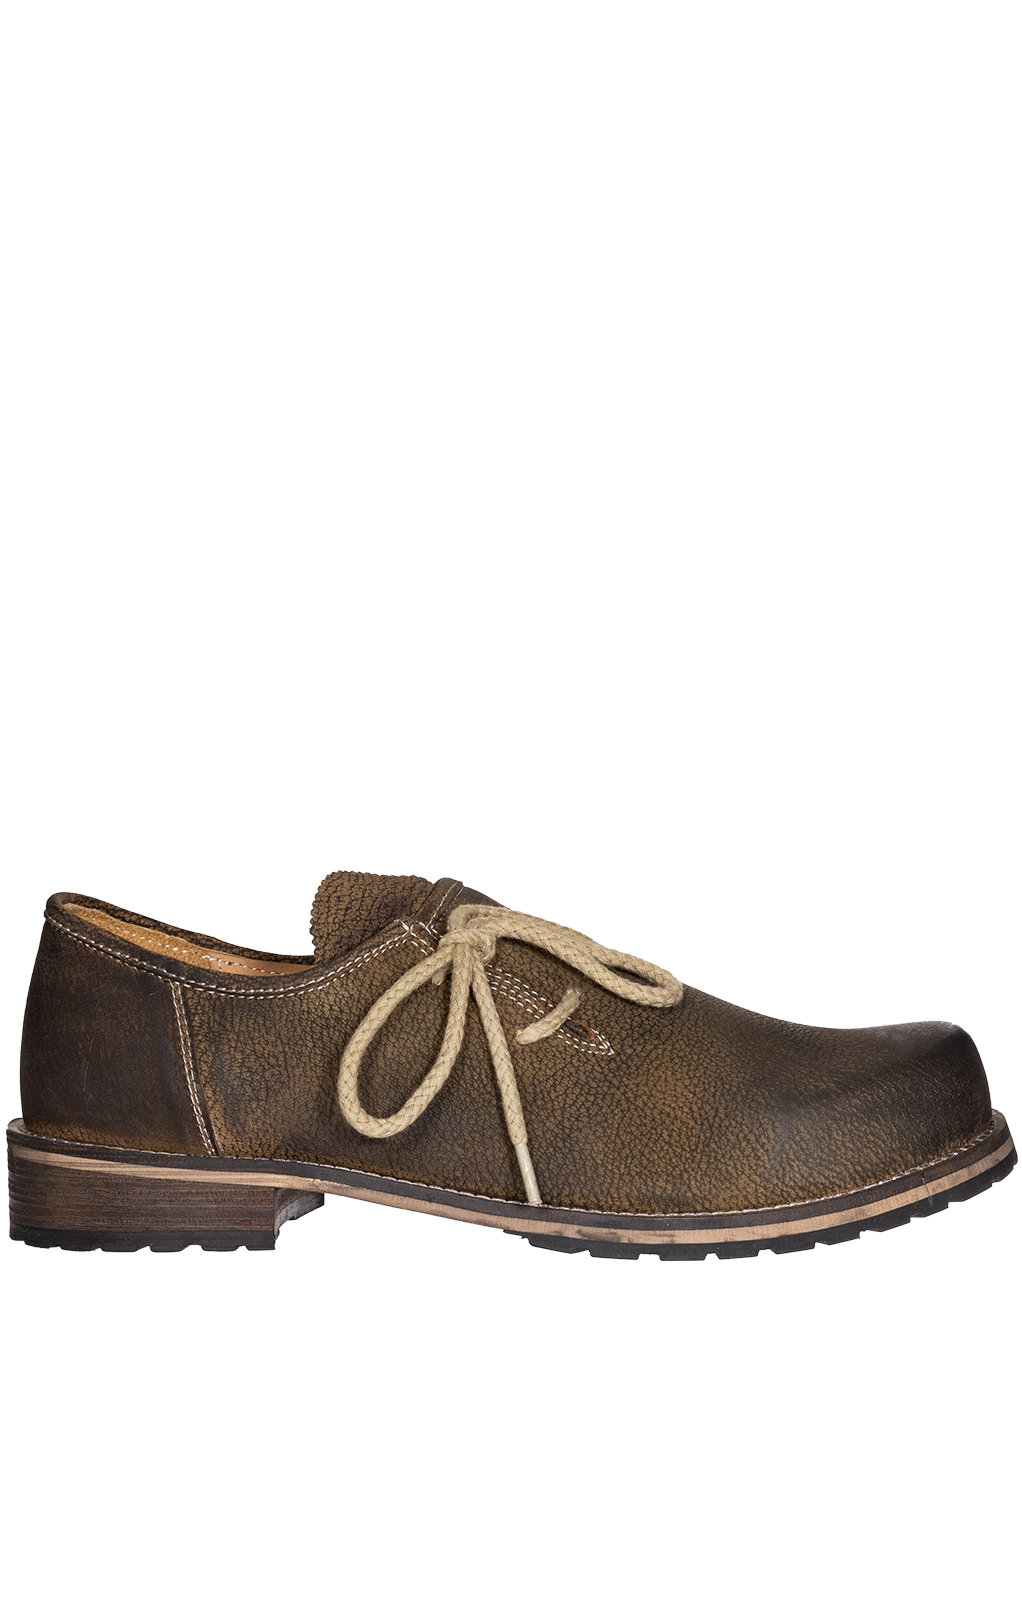 Trachtenschuhe Haferlschuhe 100% Leder Schuhe braun antik gespeckt MADDOX 